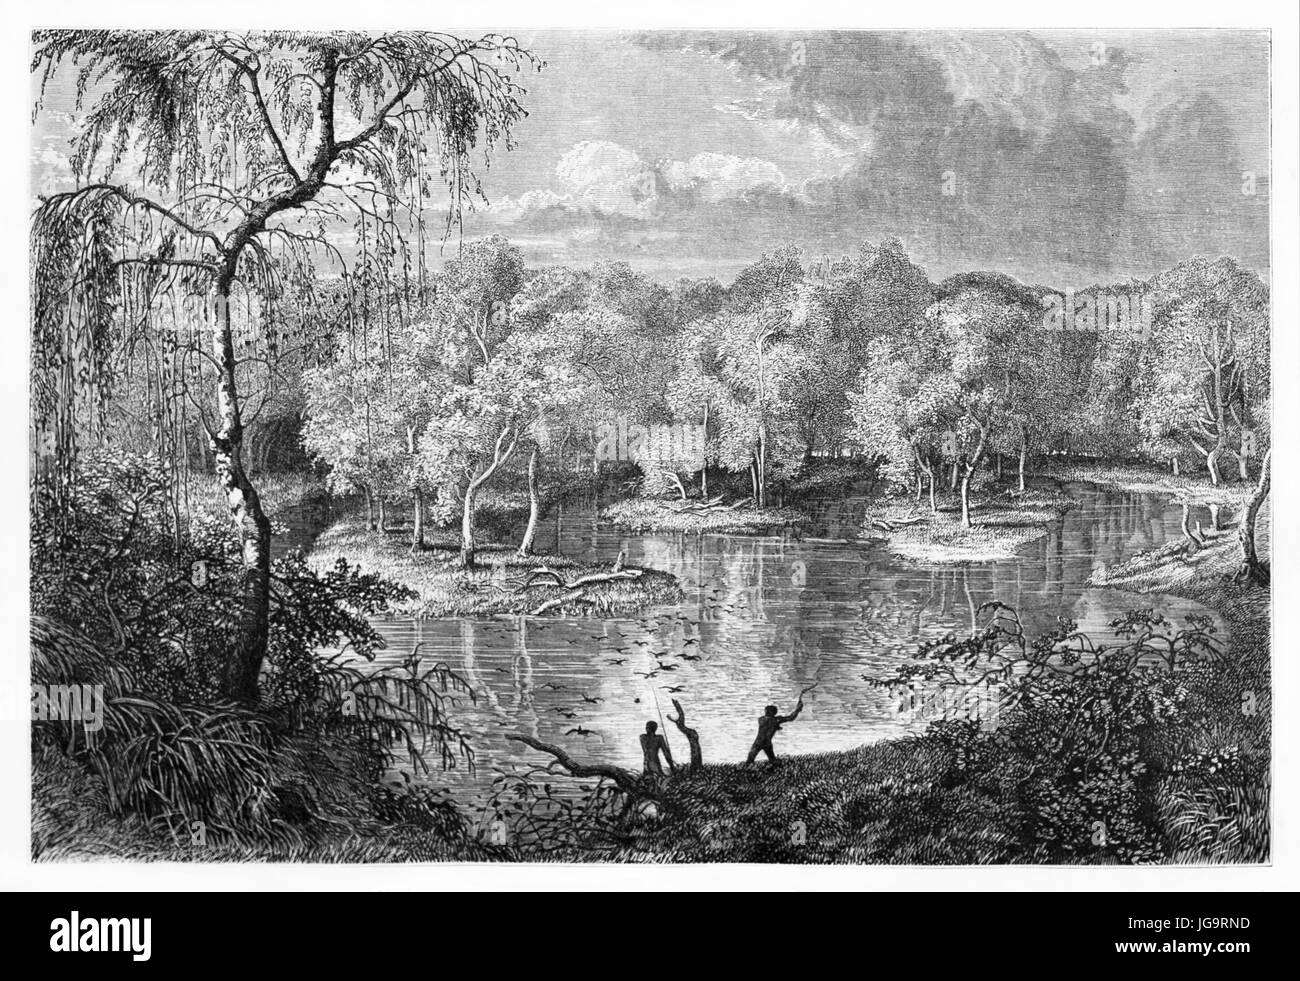 Murray River calme eau débordent dans le paysage naturel bucolique, Australie. Art de style gravure de tons gris anciens par Francais, le Tour du monde, 1861 Banque D'Images